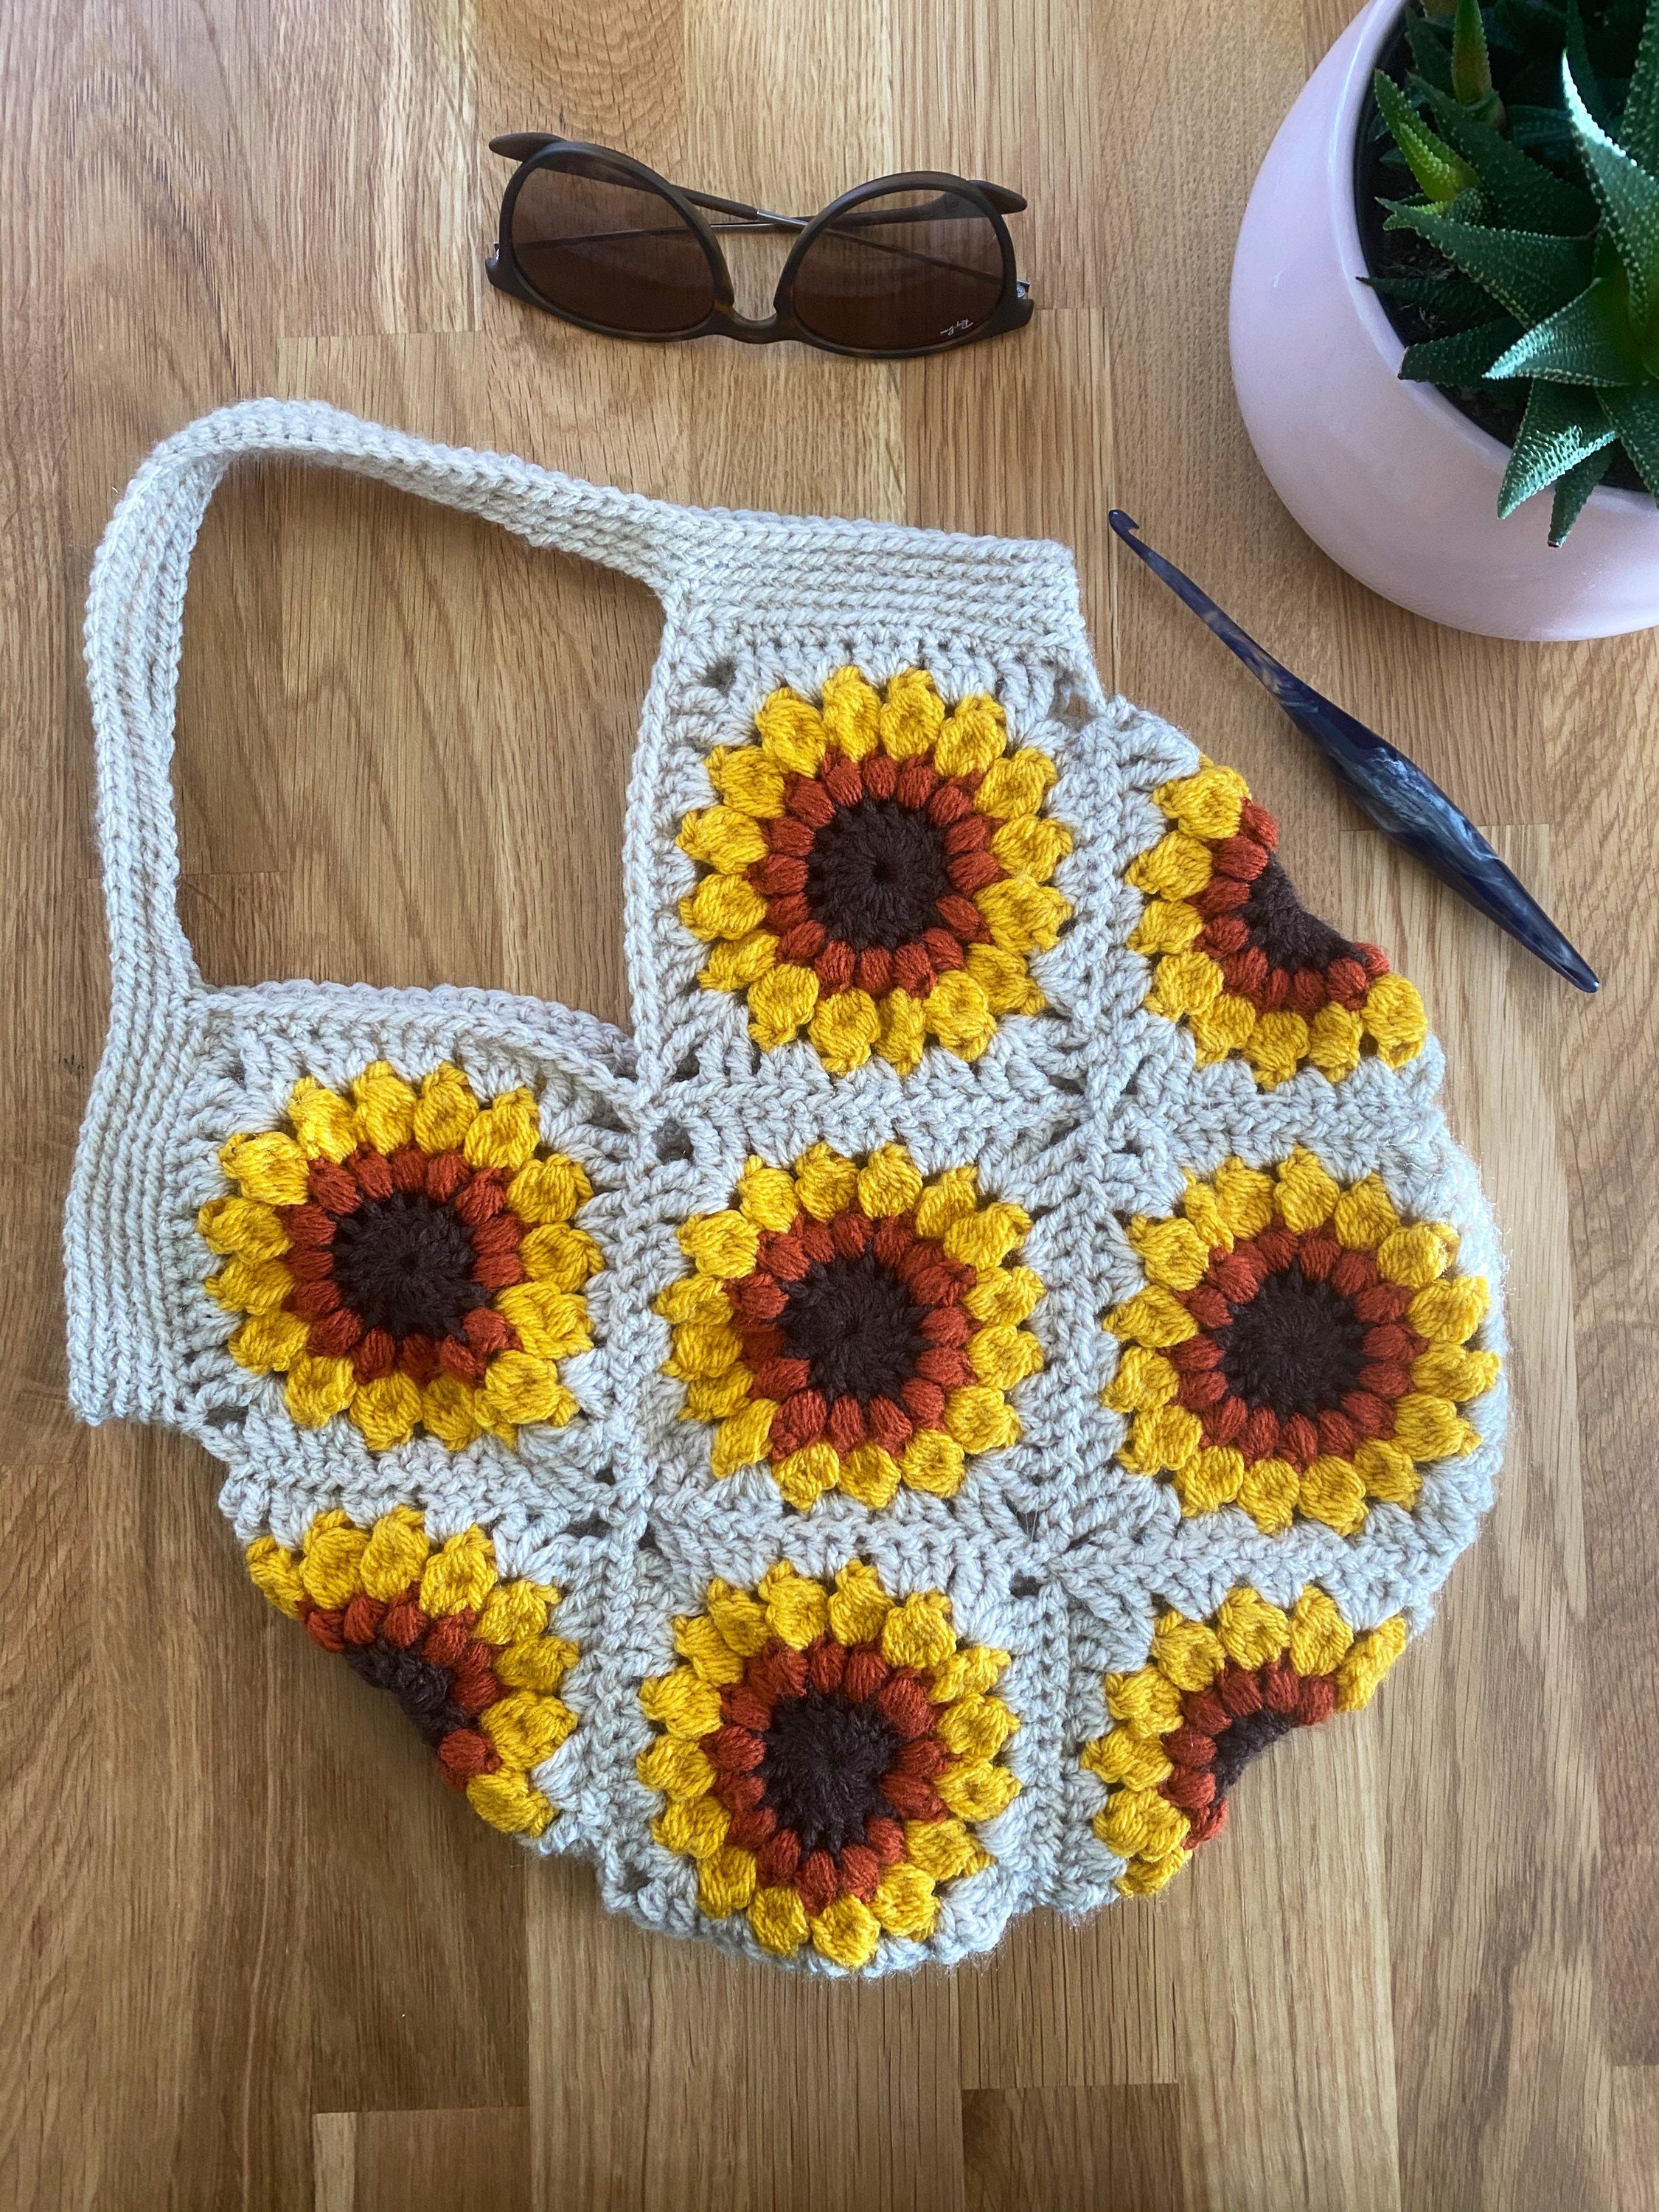 Sunflower crochet market bag/tote bag | Etsy